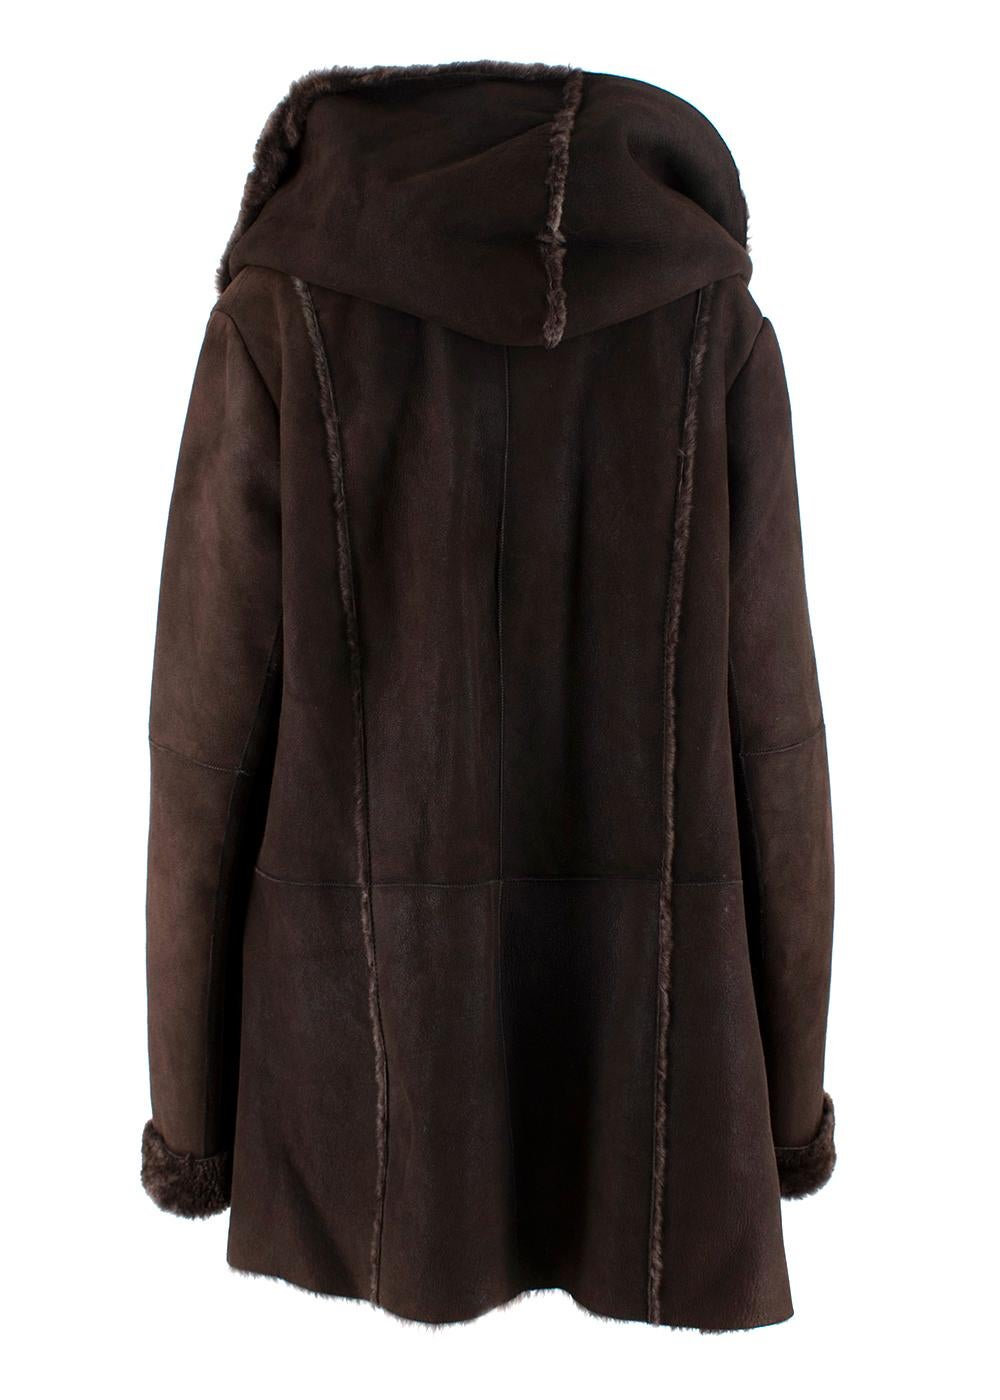 chocolate brown shearling coat